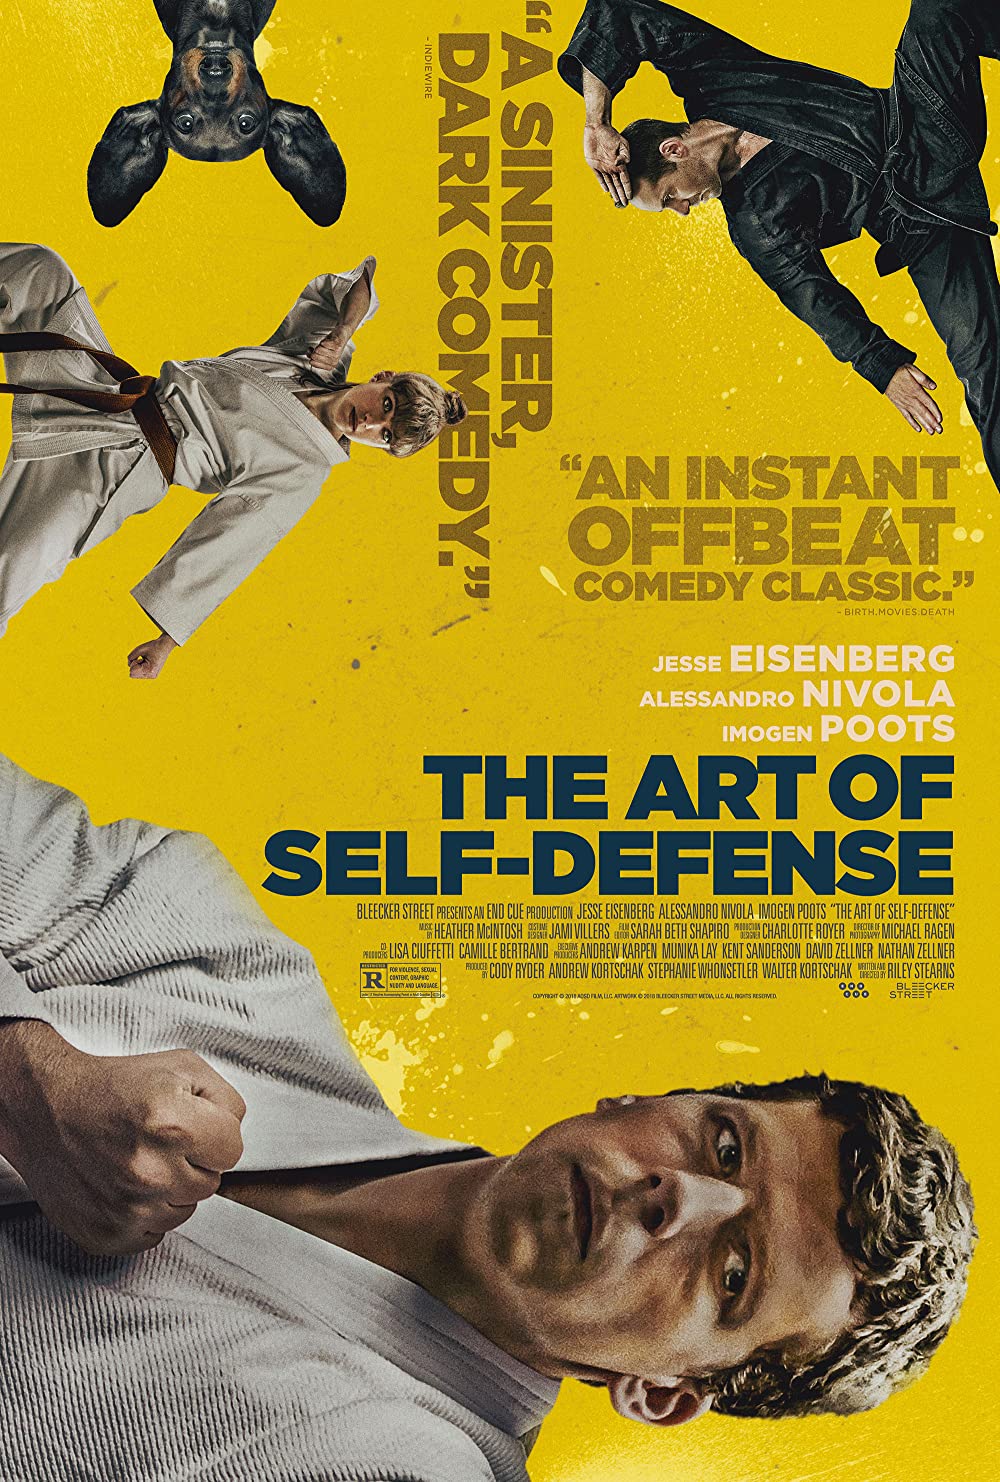 Filmbeschreibung zu The Art of Self-Defense